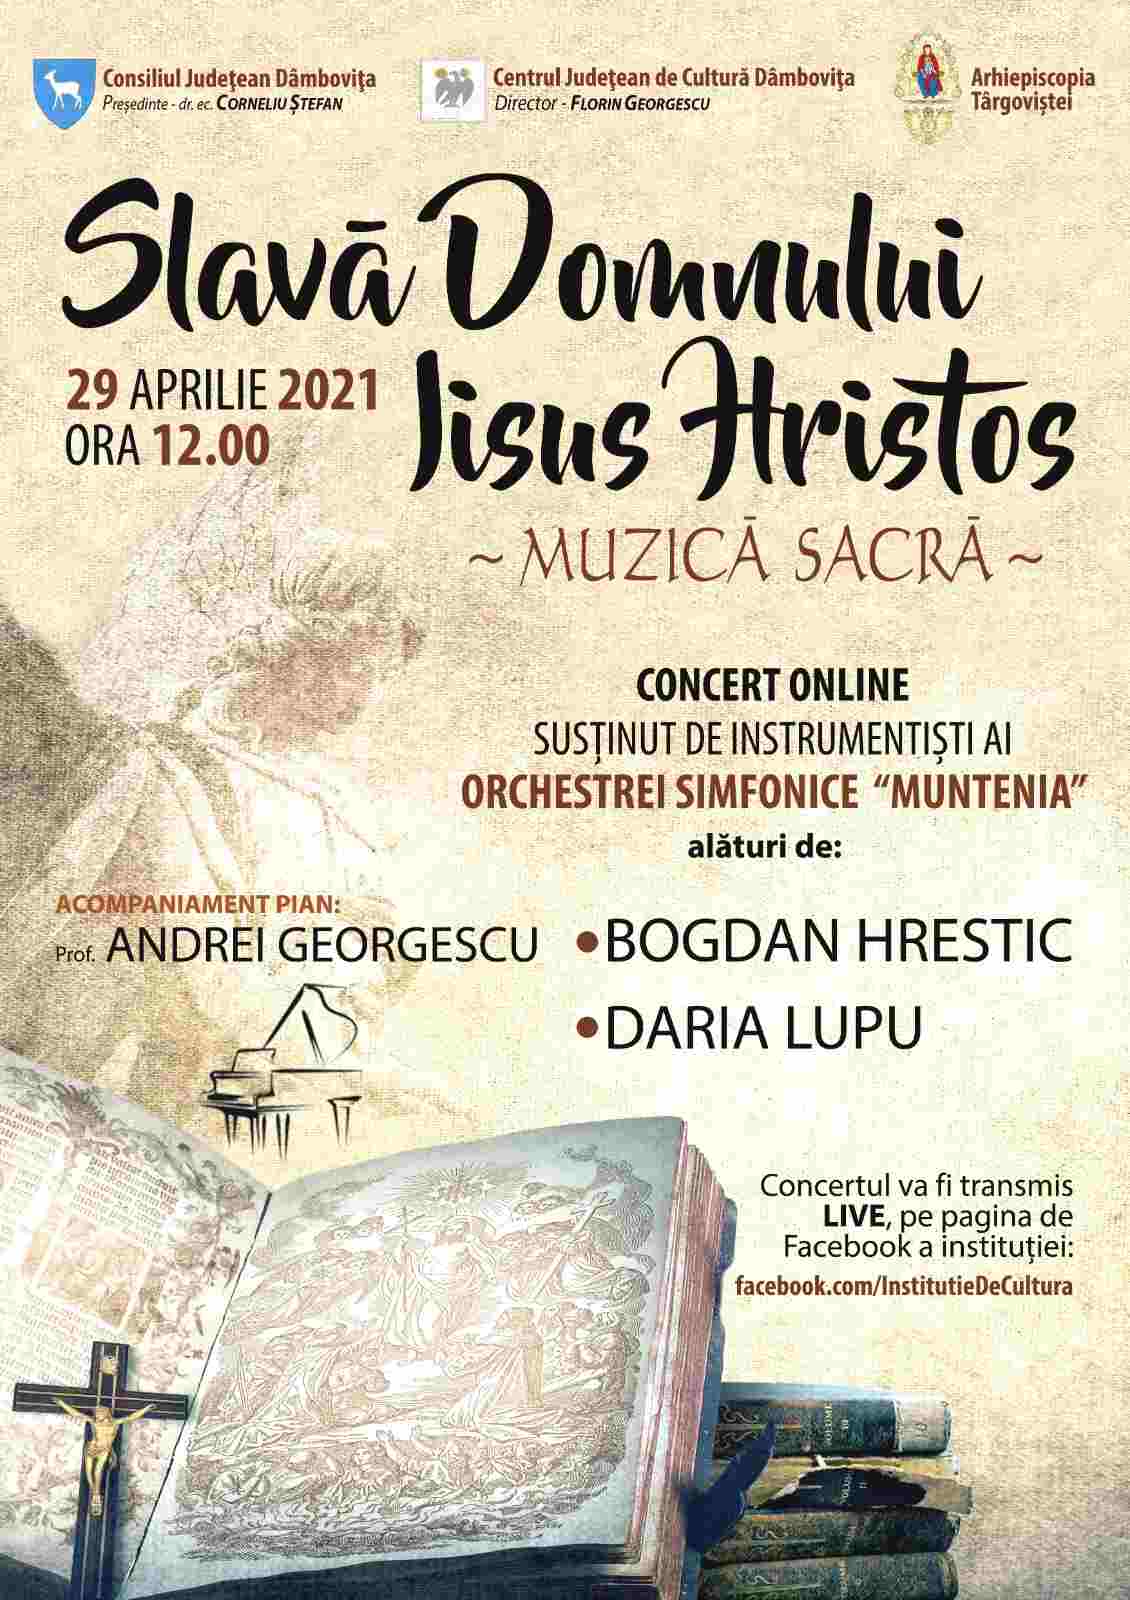  29 aprilie - Concert online cu muzică sacră